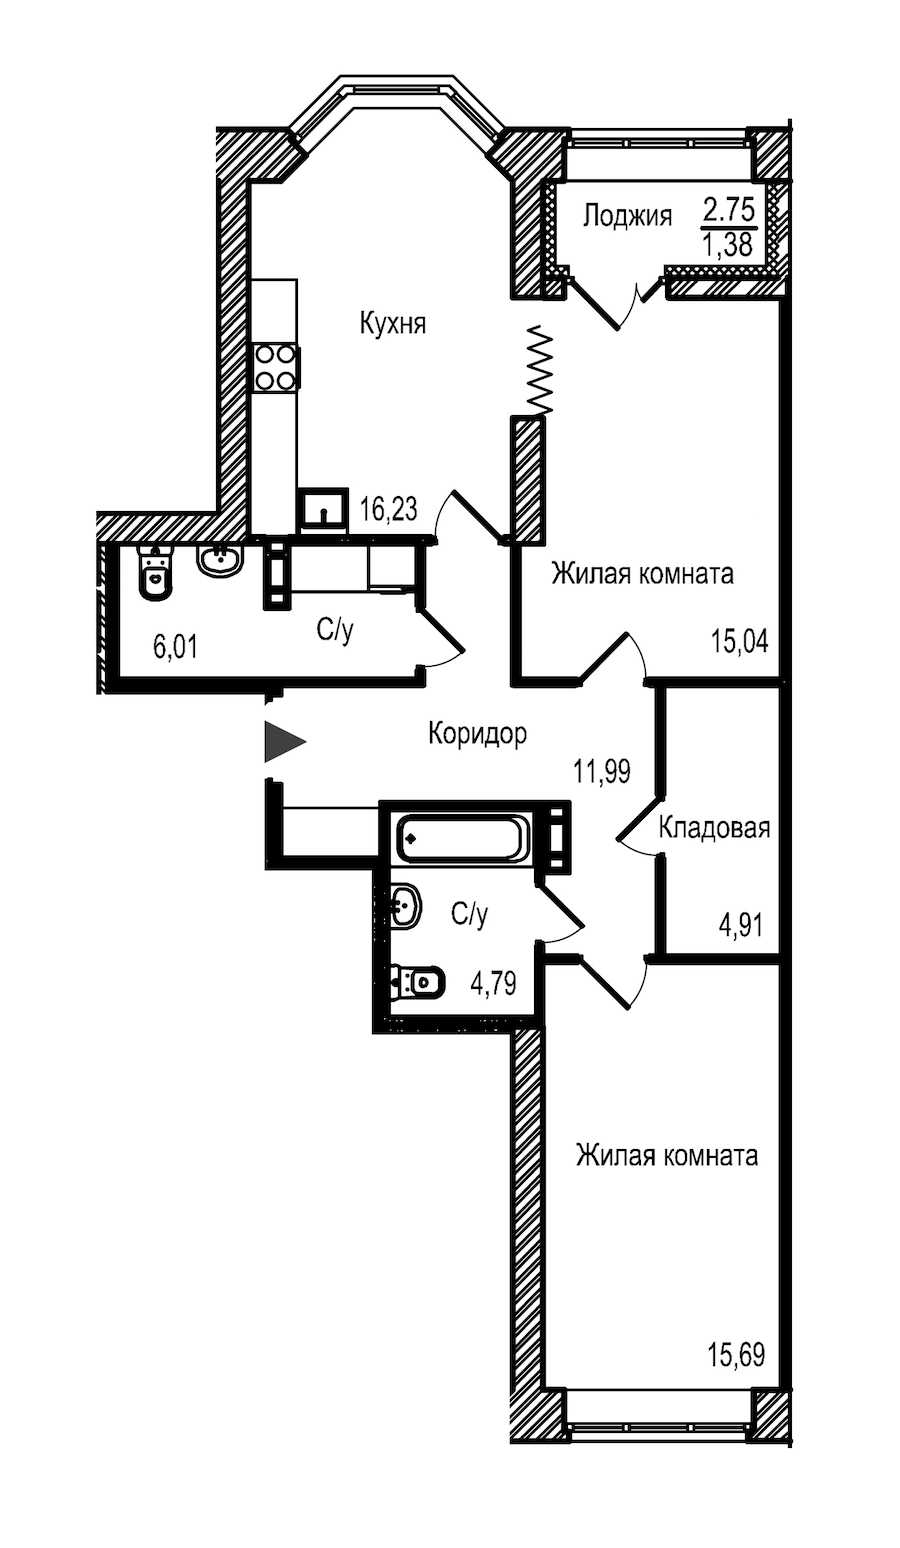 Двухкомнатная квартира в : площадь 76.04 м2 , этаж: 11 – купить в Санкт-Петербурге